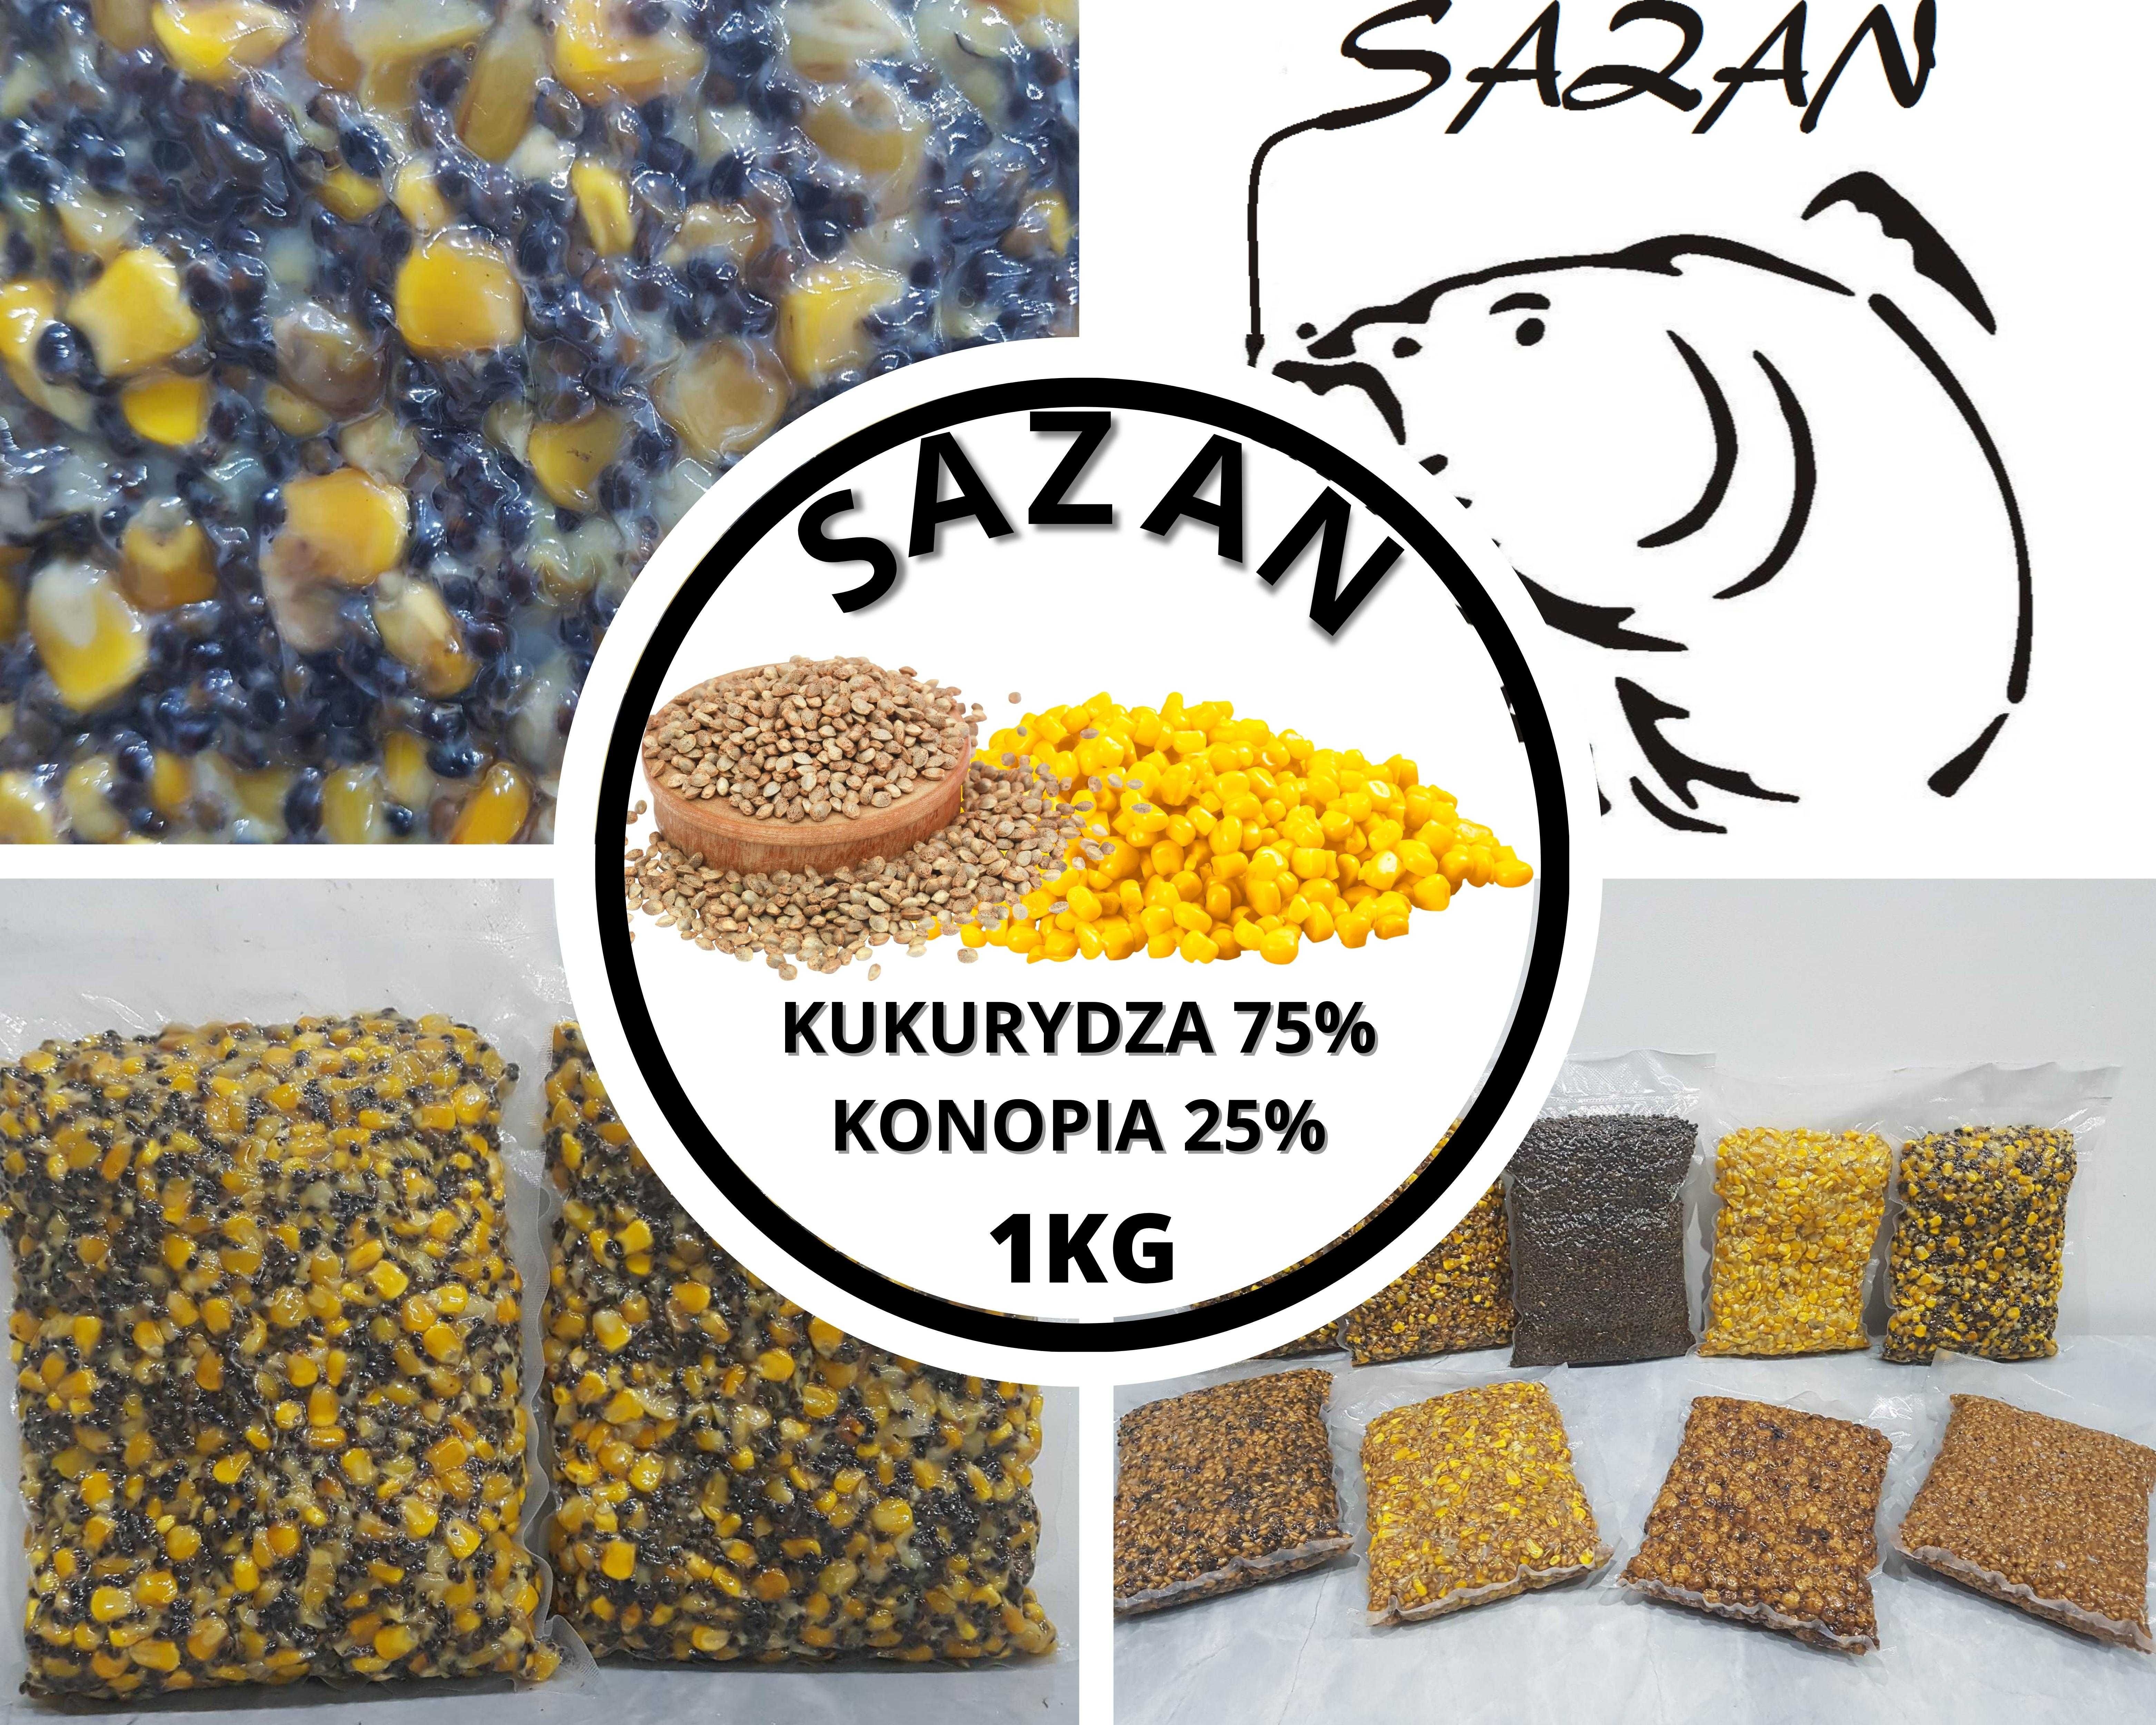 10 kg Kukurydza z konopią ZANĘTA WĘDKARSKA Sazan Baits